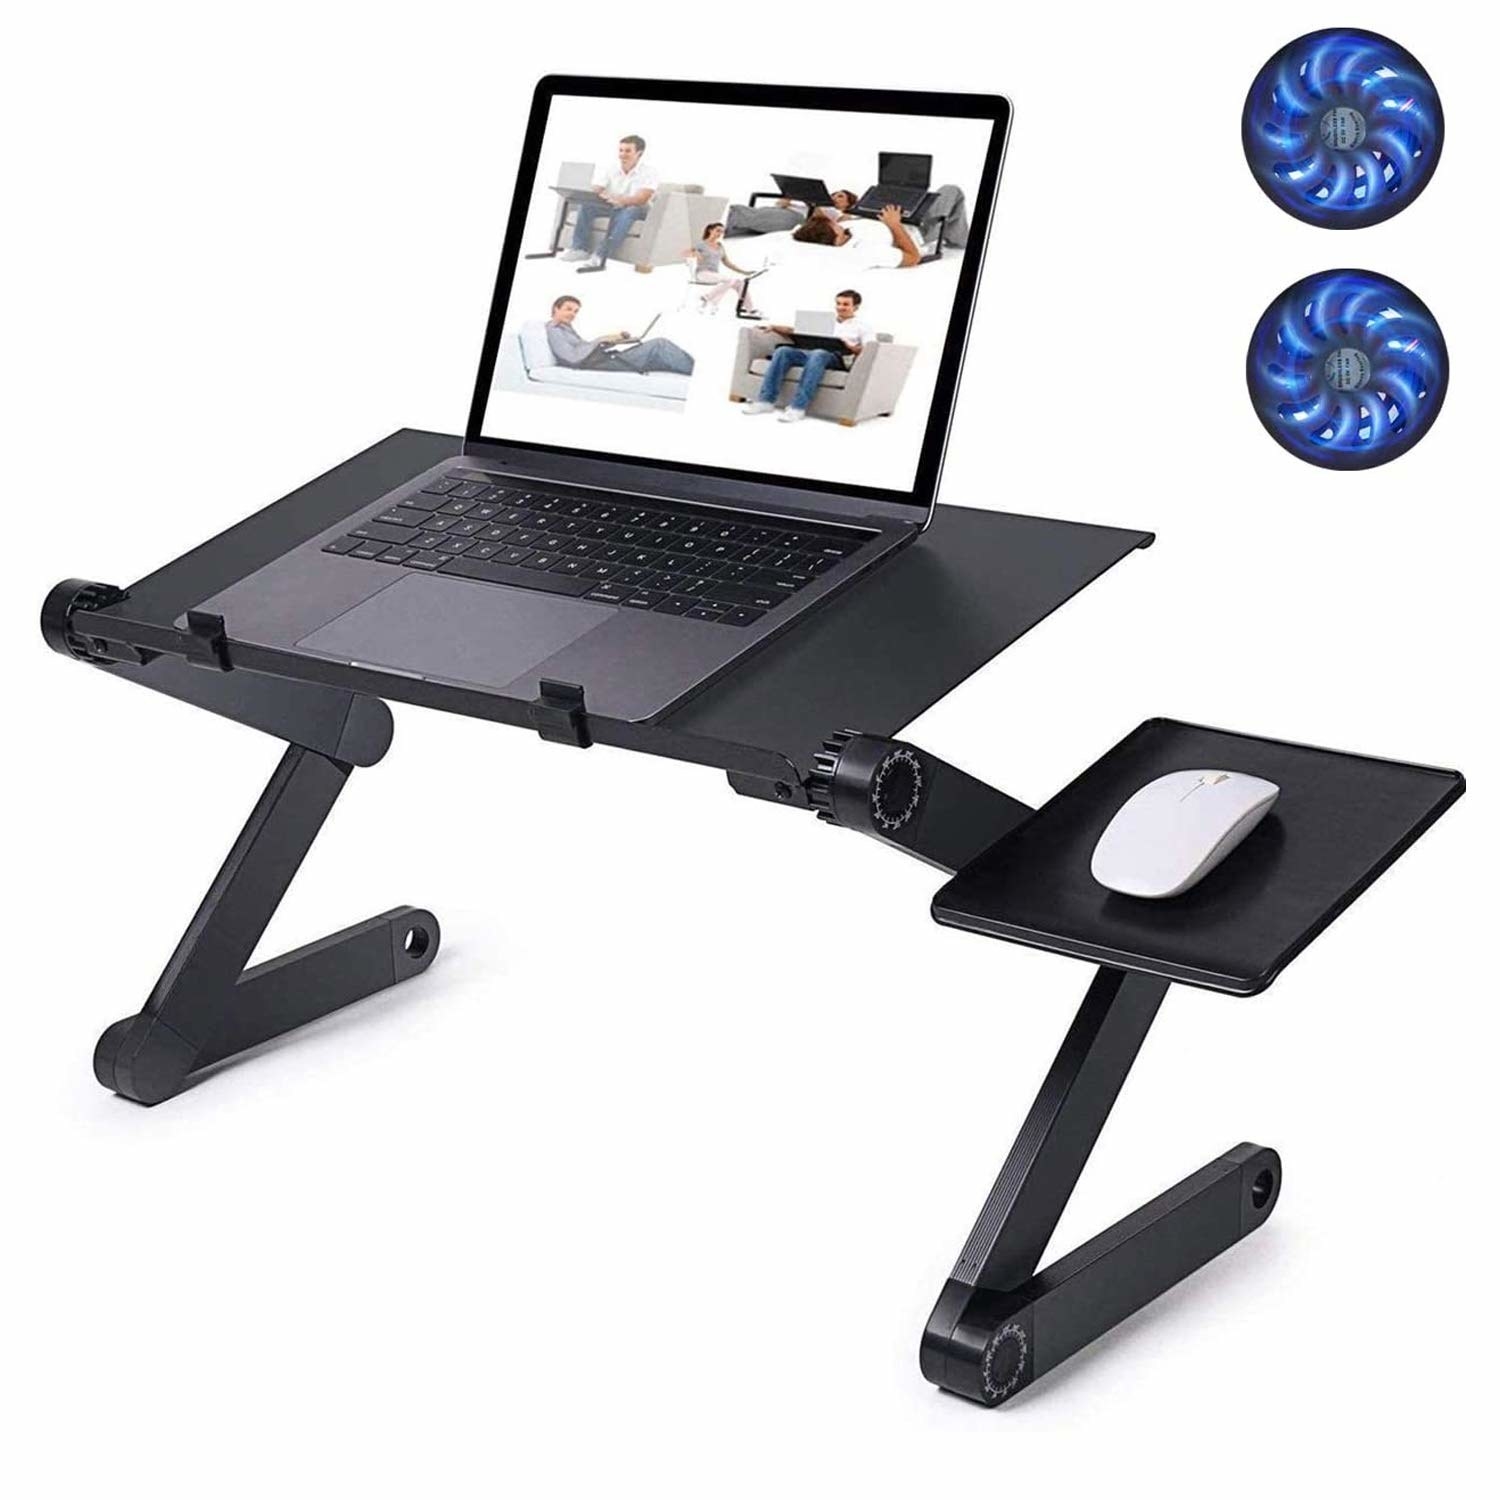 Black adjustable laptop desk